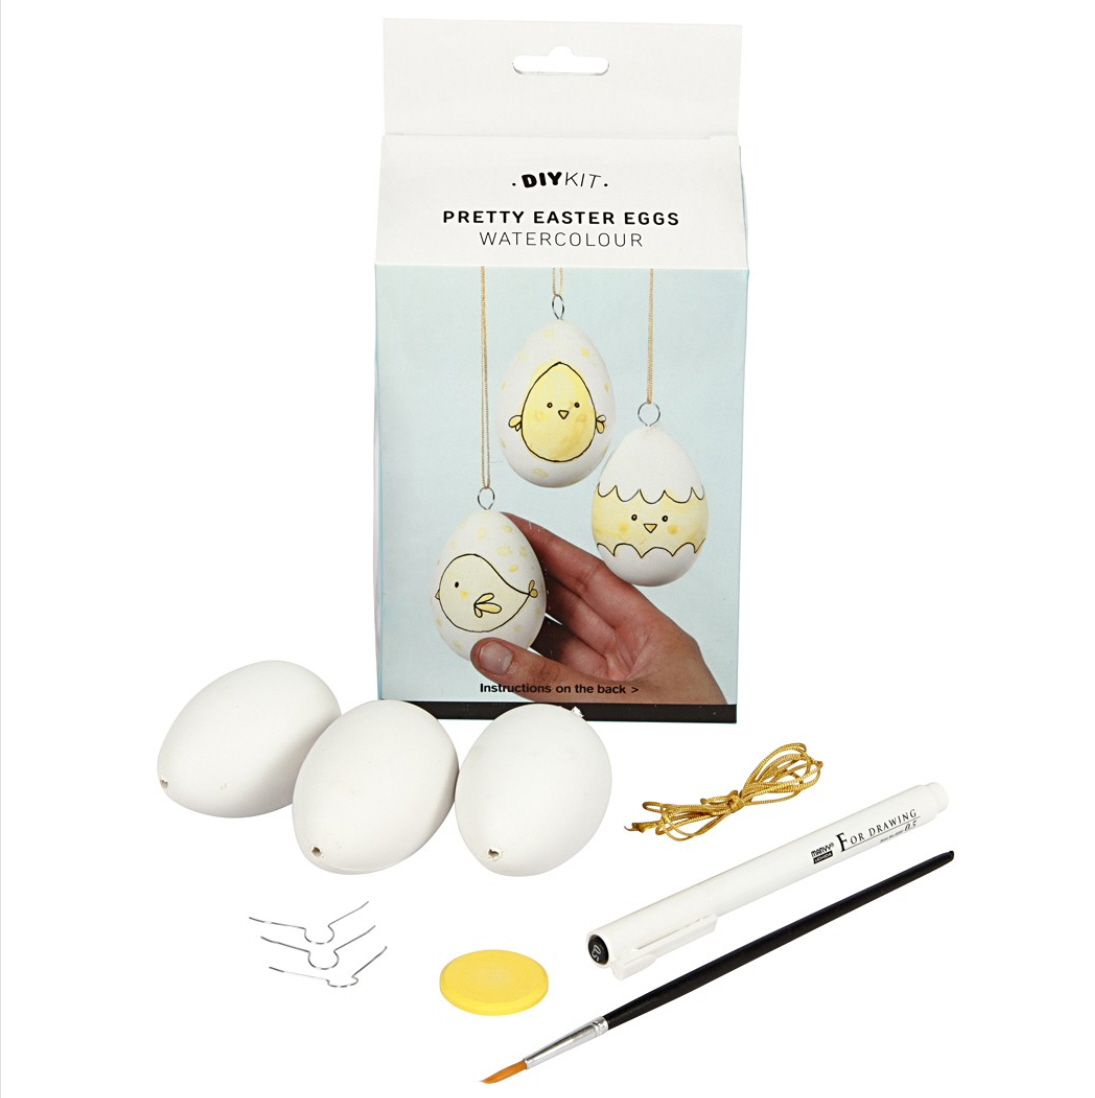 Osterbastelset "Pretty Easter Eggs" DIY Kit 